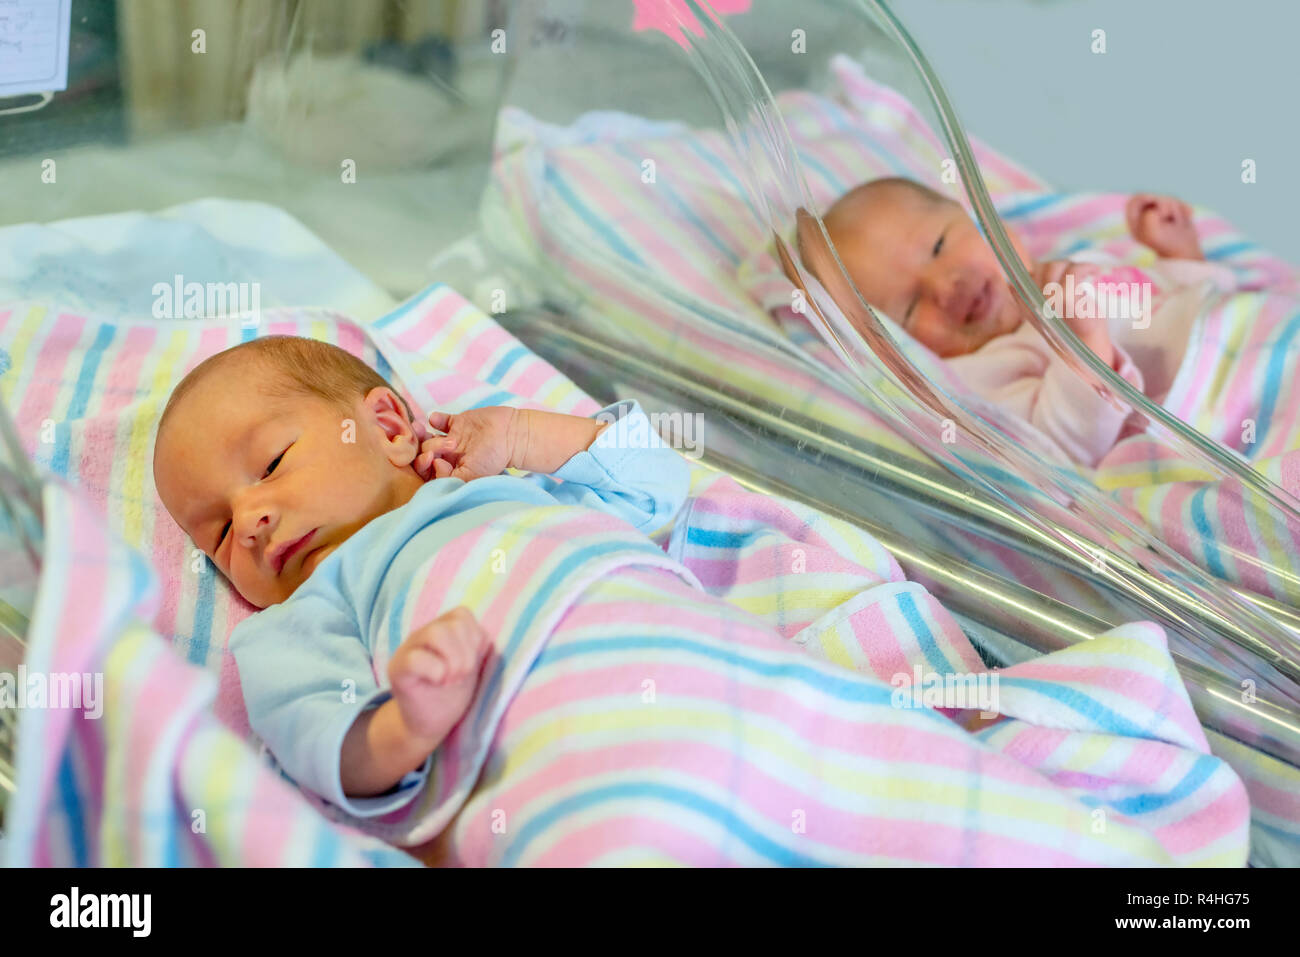 Les Jumeaux Nouveau Ne Garcon Et Fille A L Hopital Sous Des Couvertures Photo Stock Alamy